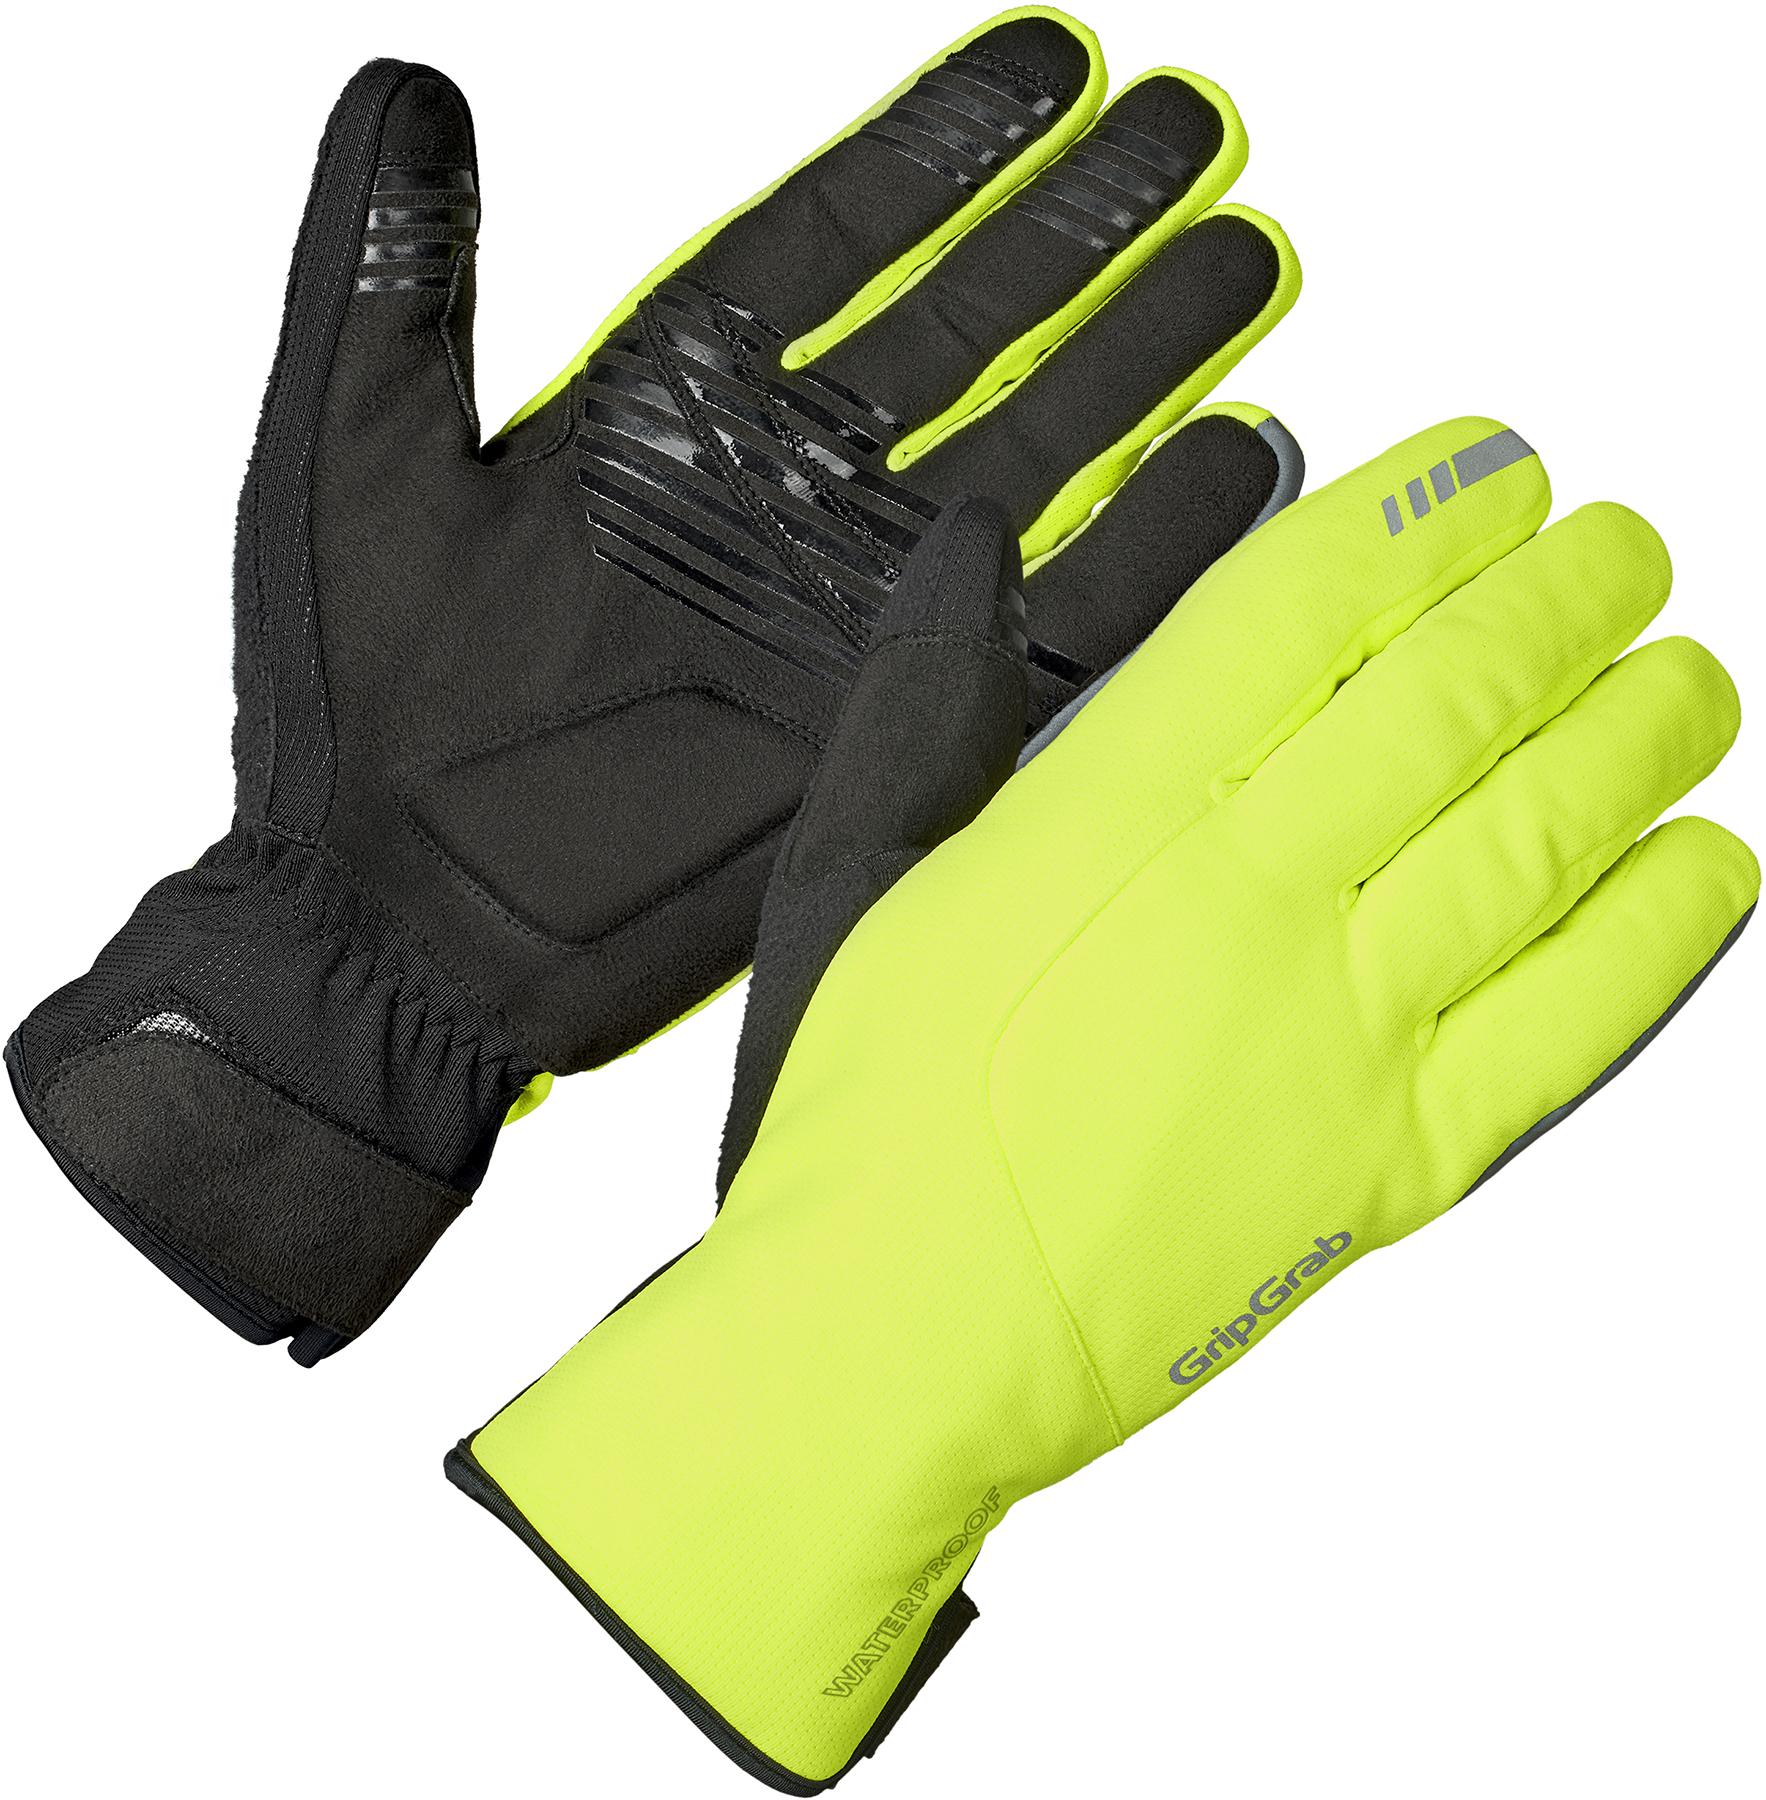 Gripgrab Polaris 2 Waterproof Winter Gloves - Hi-viz Yellow